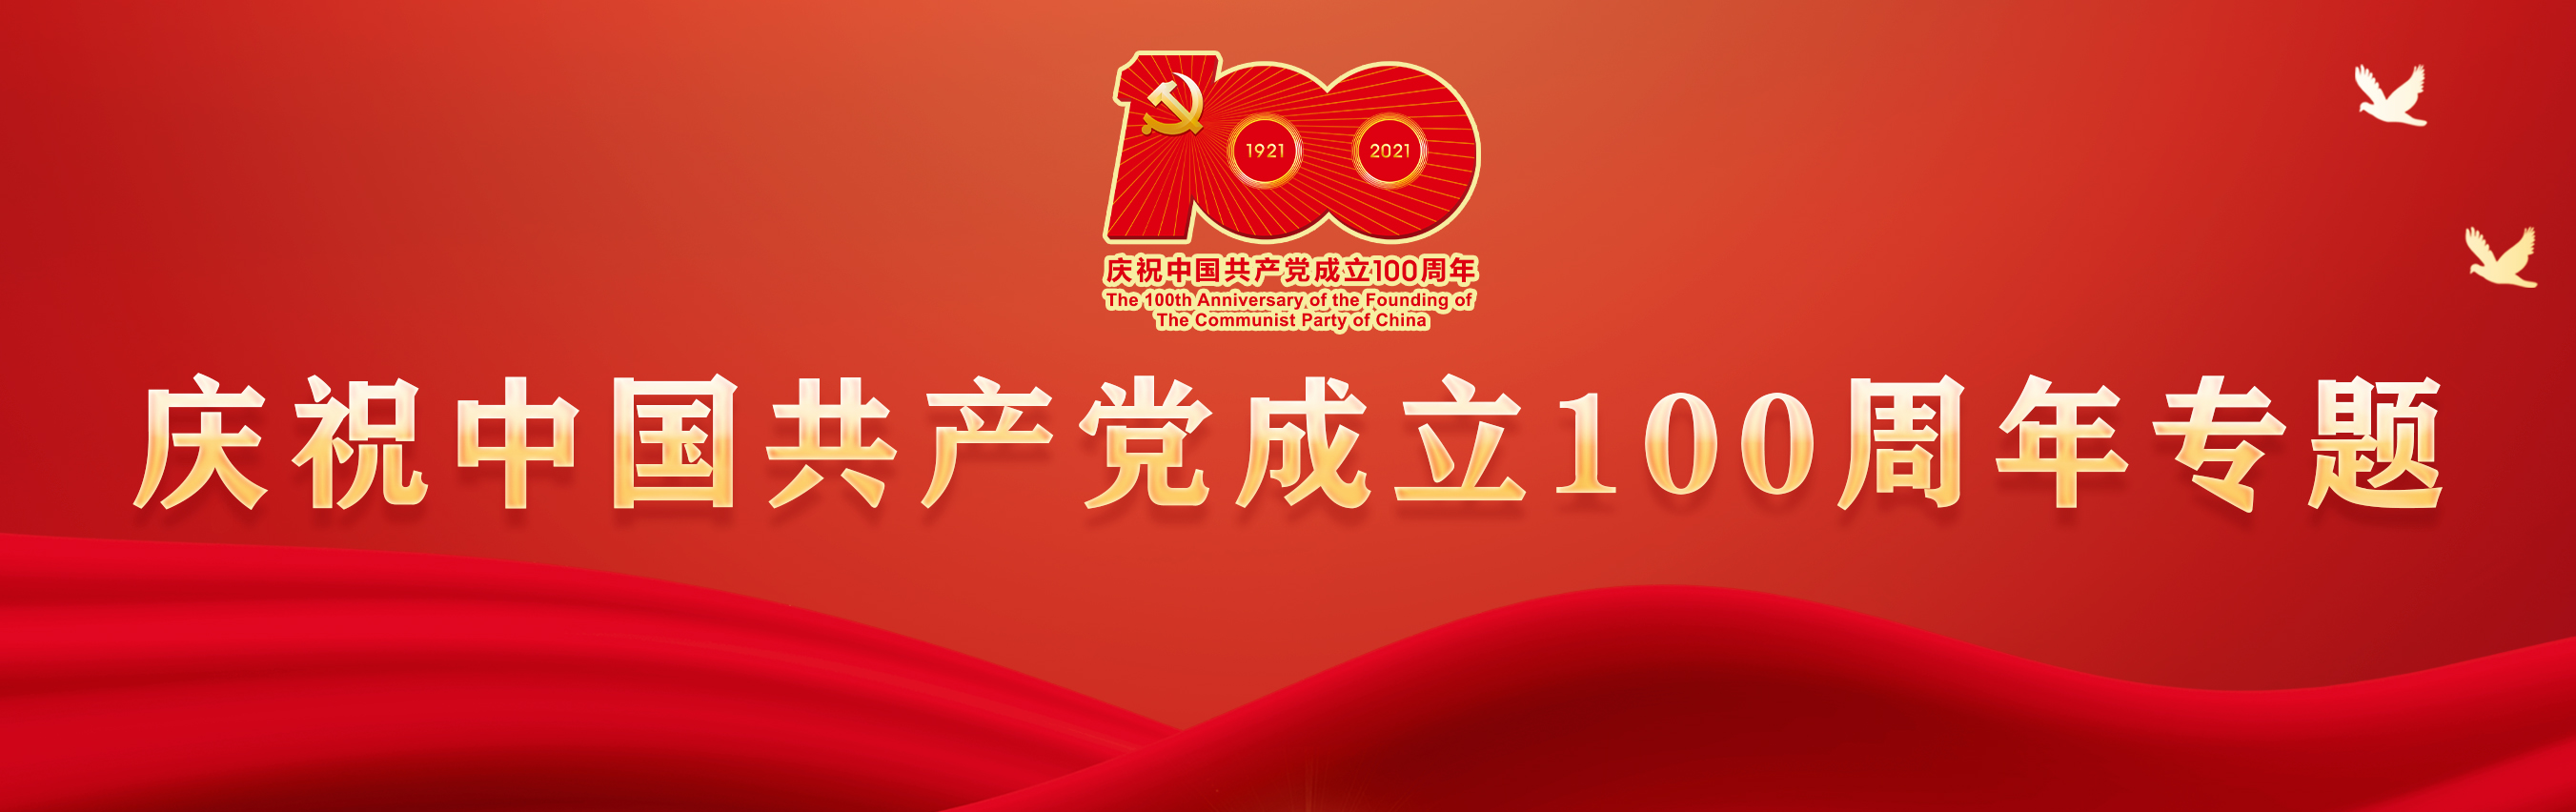 庆祝中国共产党成立100周年专题